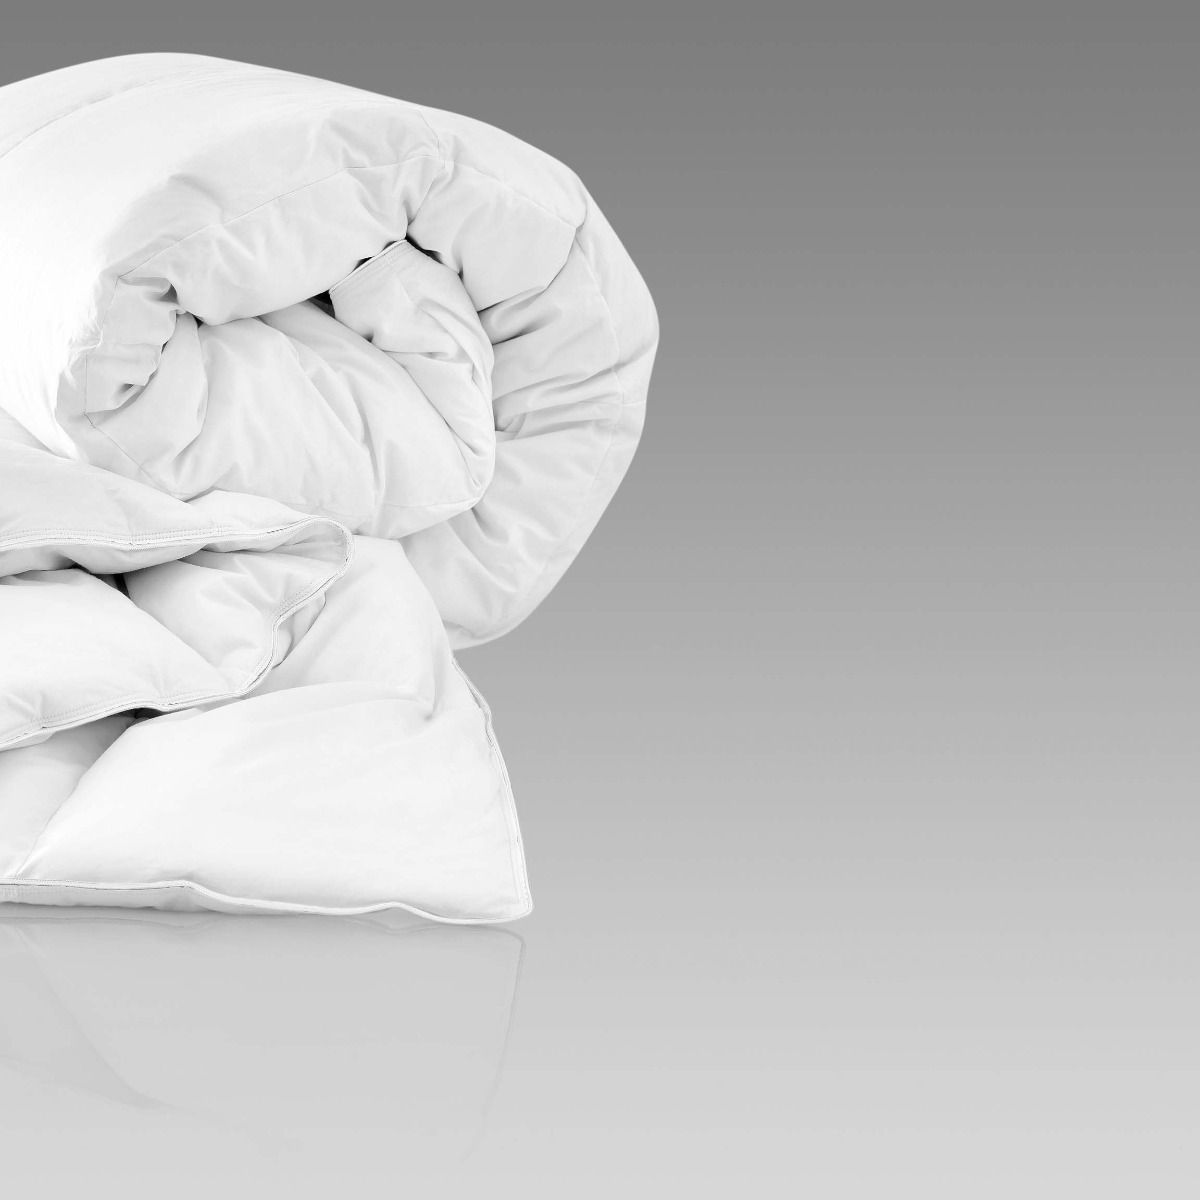 Одеяла Одеяло Орион  - Фото